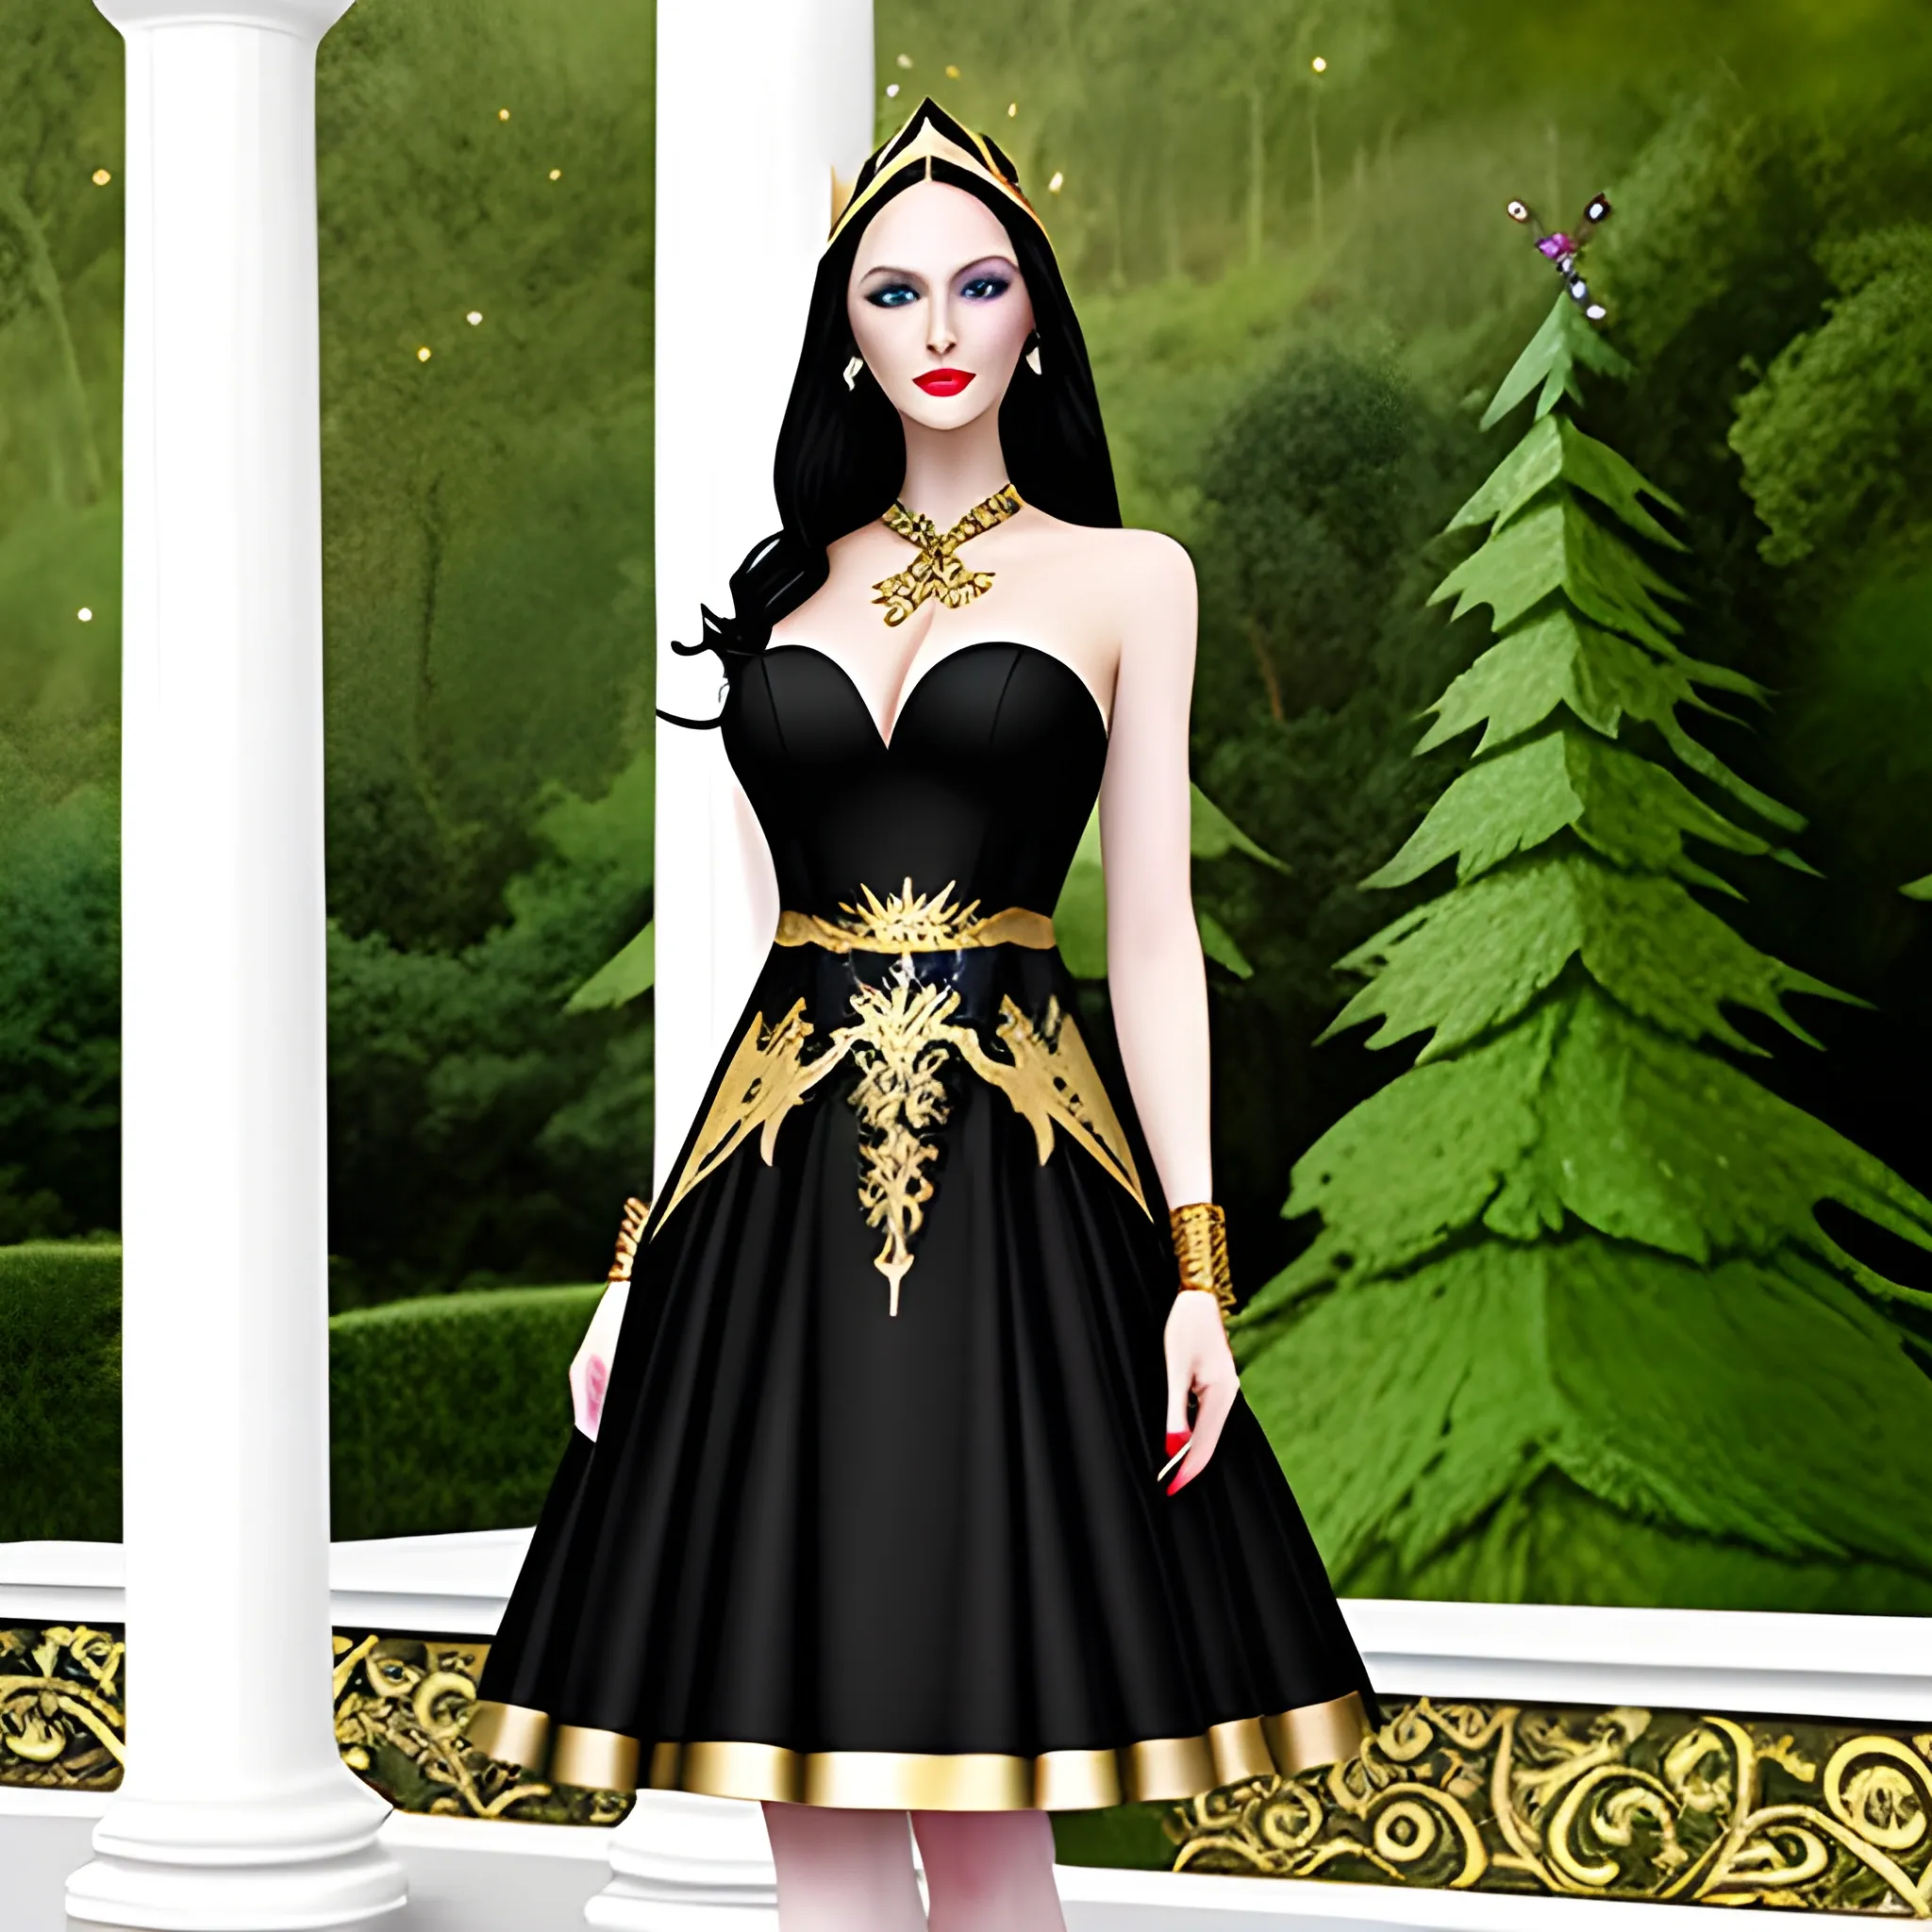 Sample sale dress in rose gold sequin style Kaylee | Dresses for sale, Dress,  Bridal